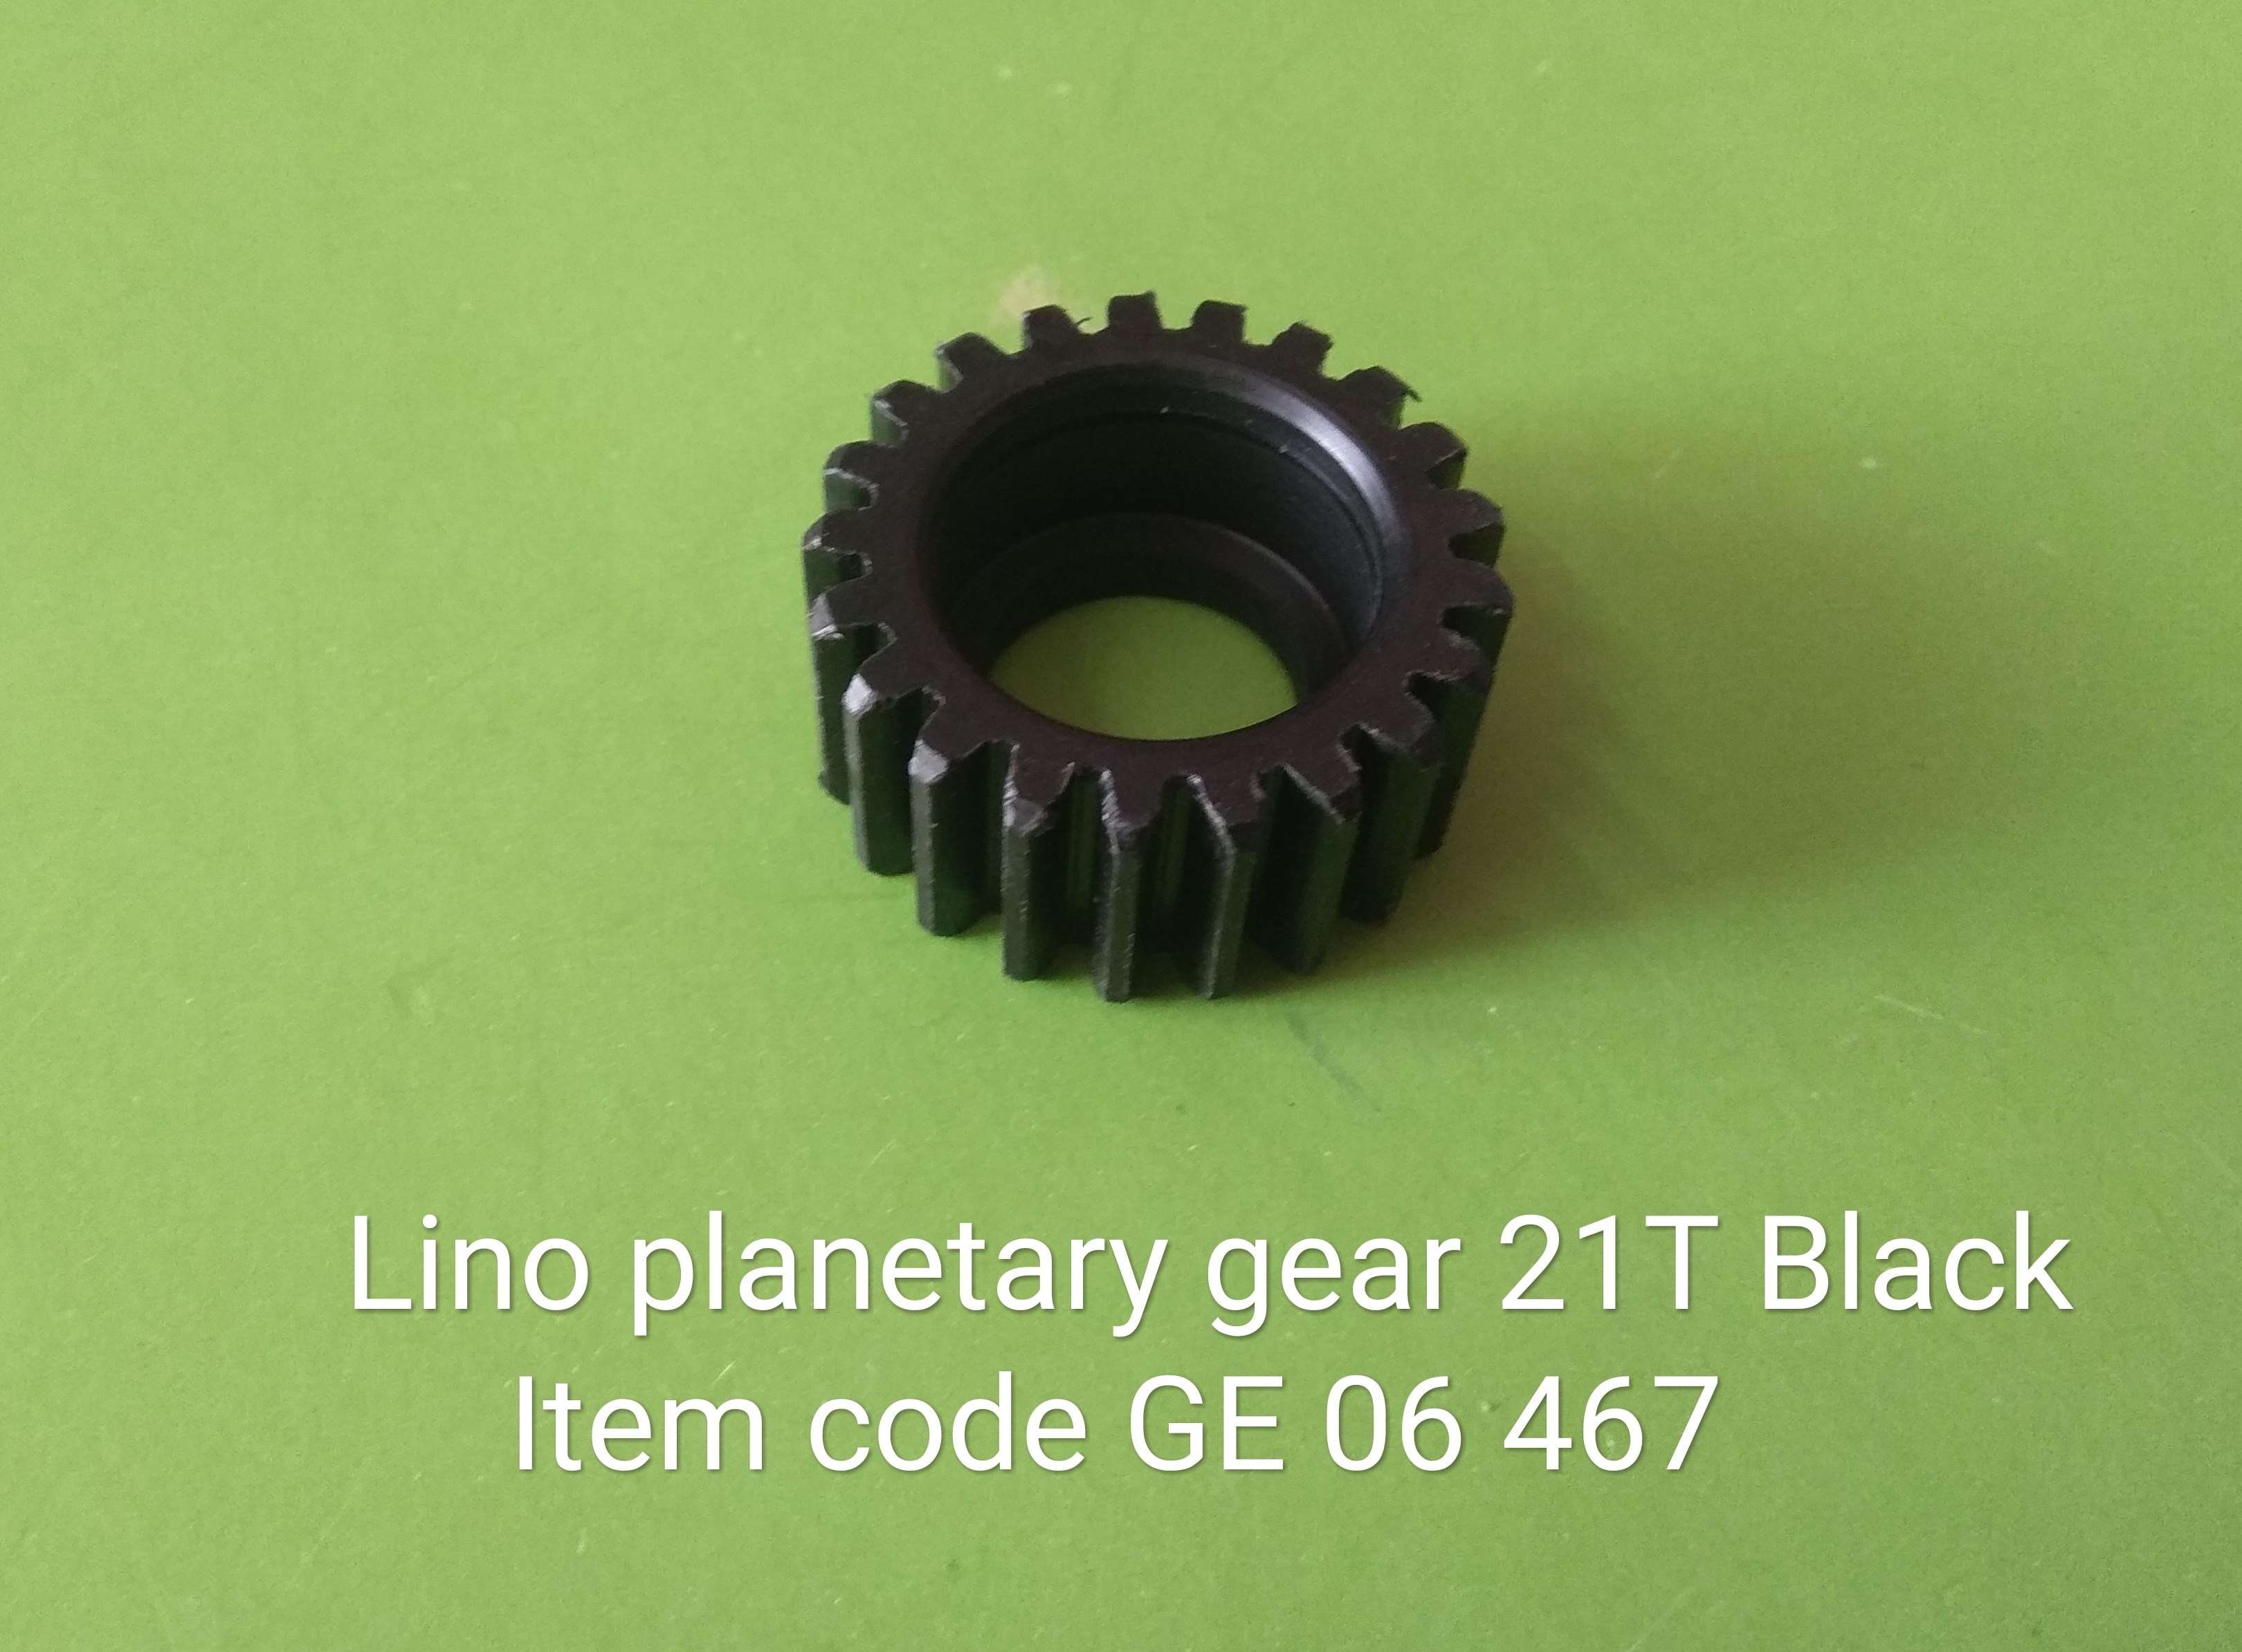 GE_06_467_Lino_Planetary_Gear_21T_Black_1_69.jpg